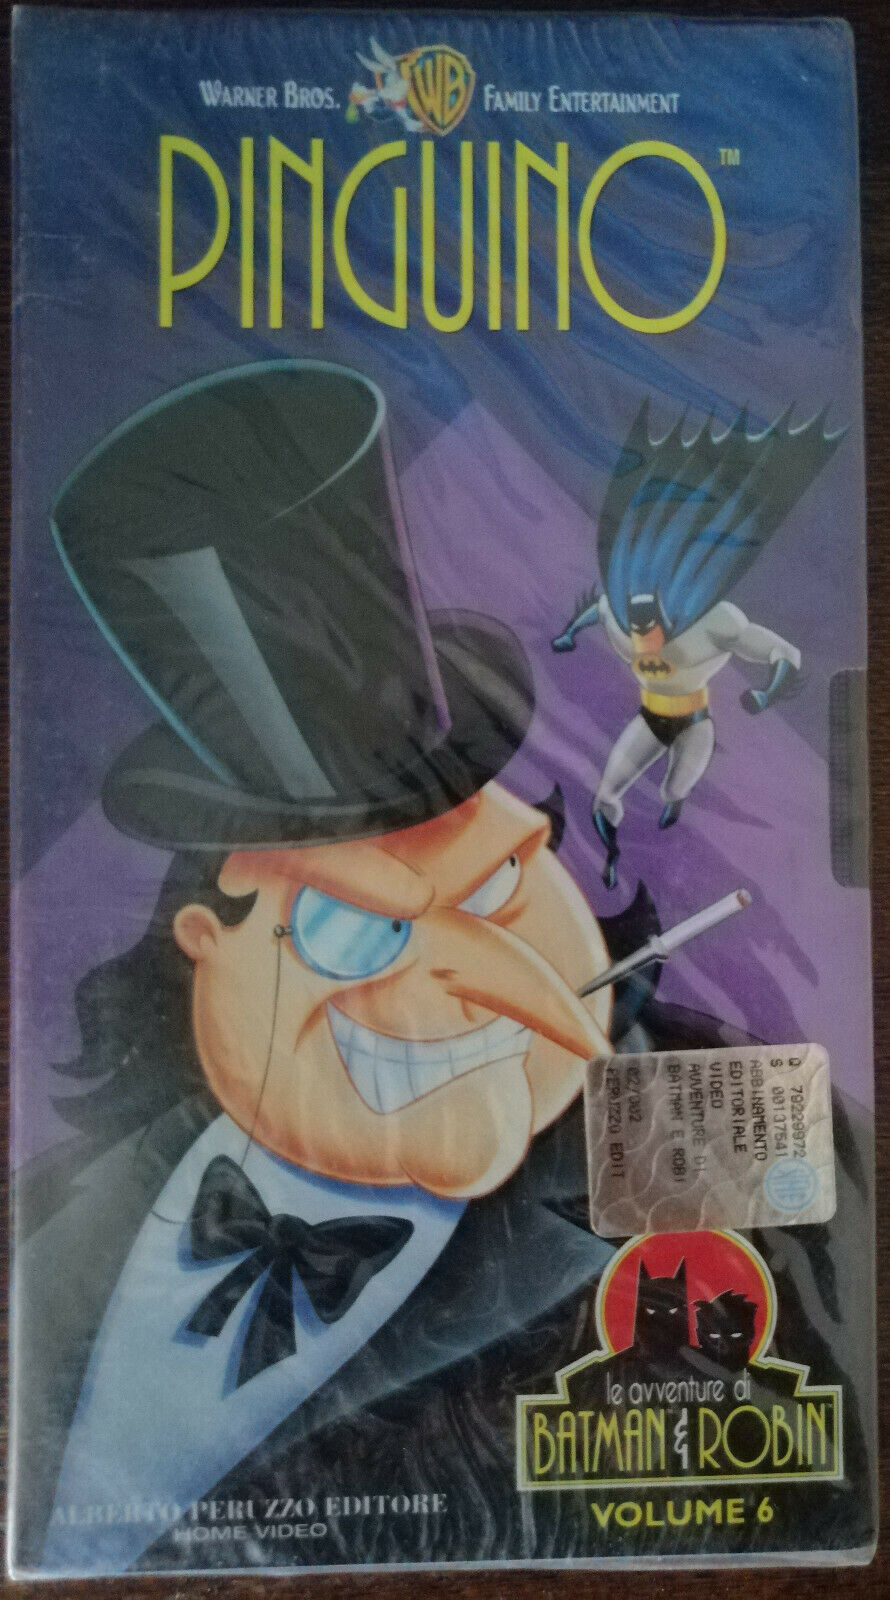 Le avventura di Batman e Robin, Pinguino, vol.6 - Alberto Peruzzo,1997 - VHS - A